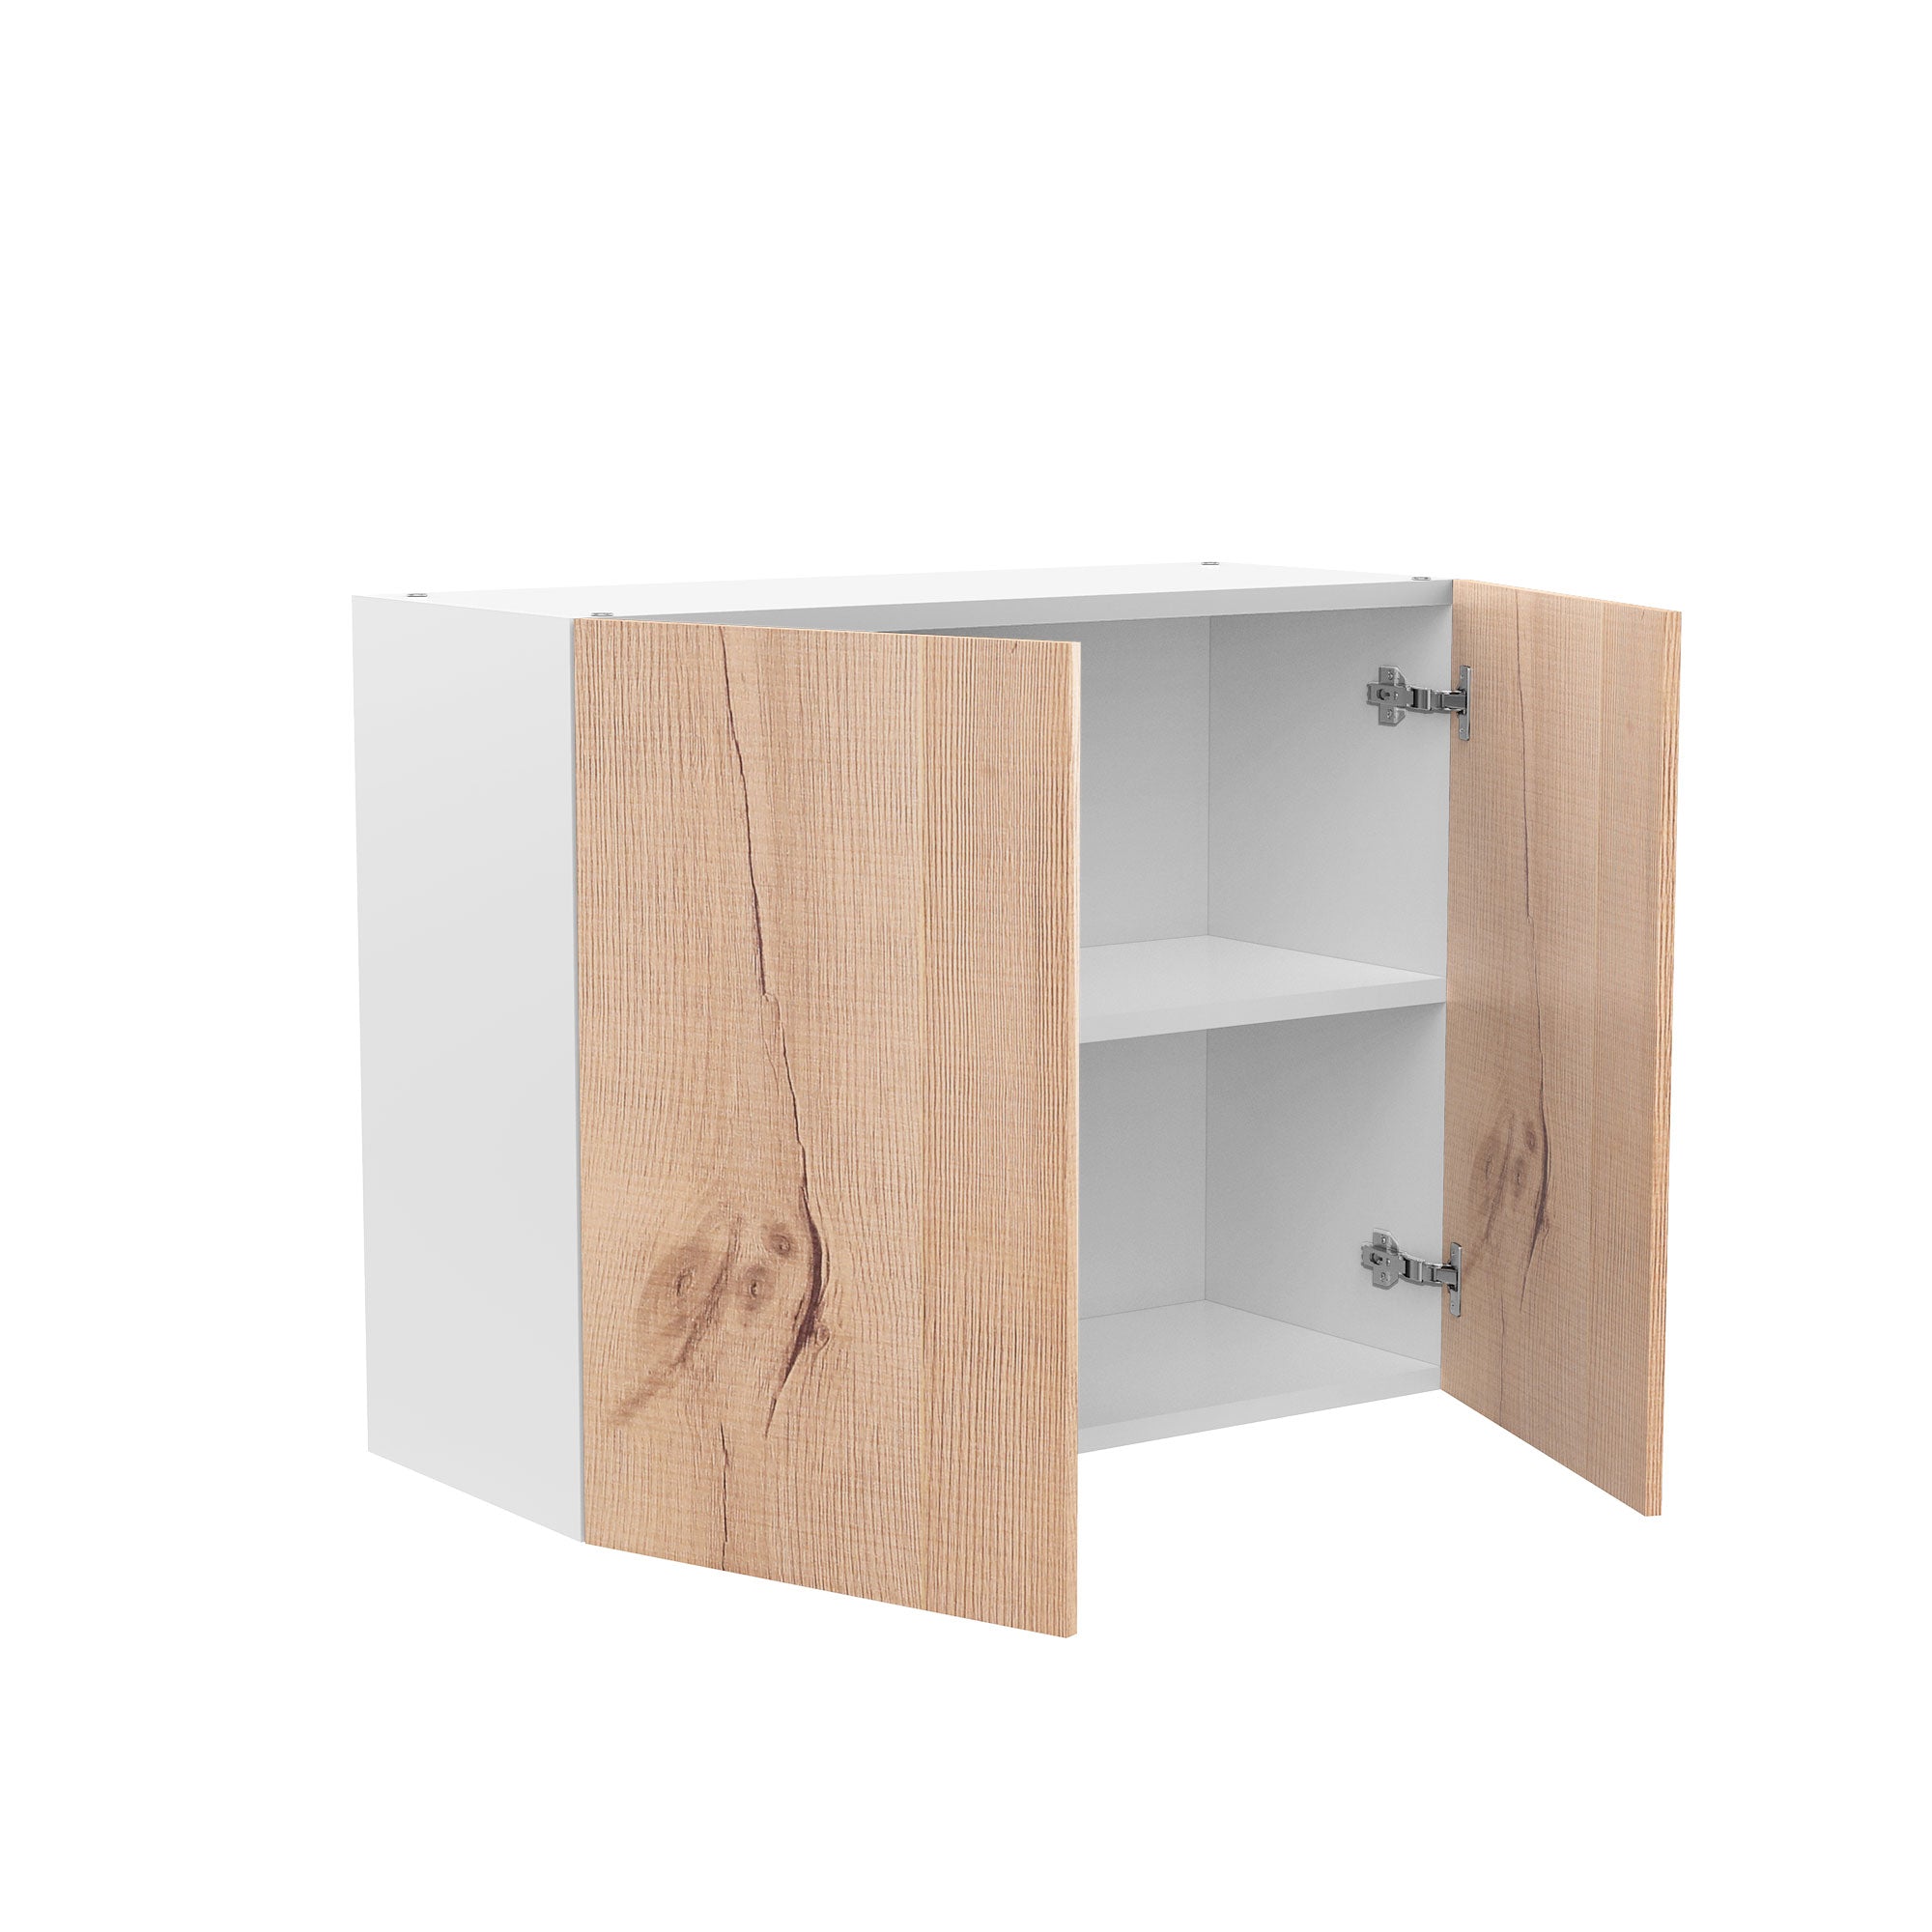 RTA - Rustic Oak - Double Door Wall Cabinets | 33"W x 24"H x 12"D